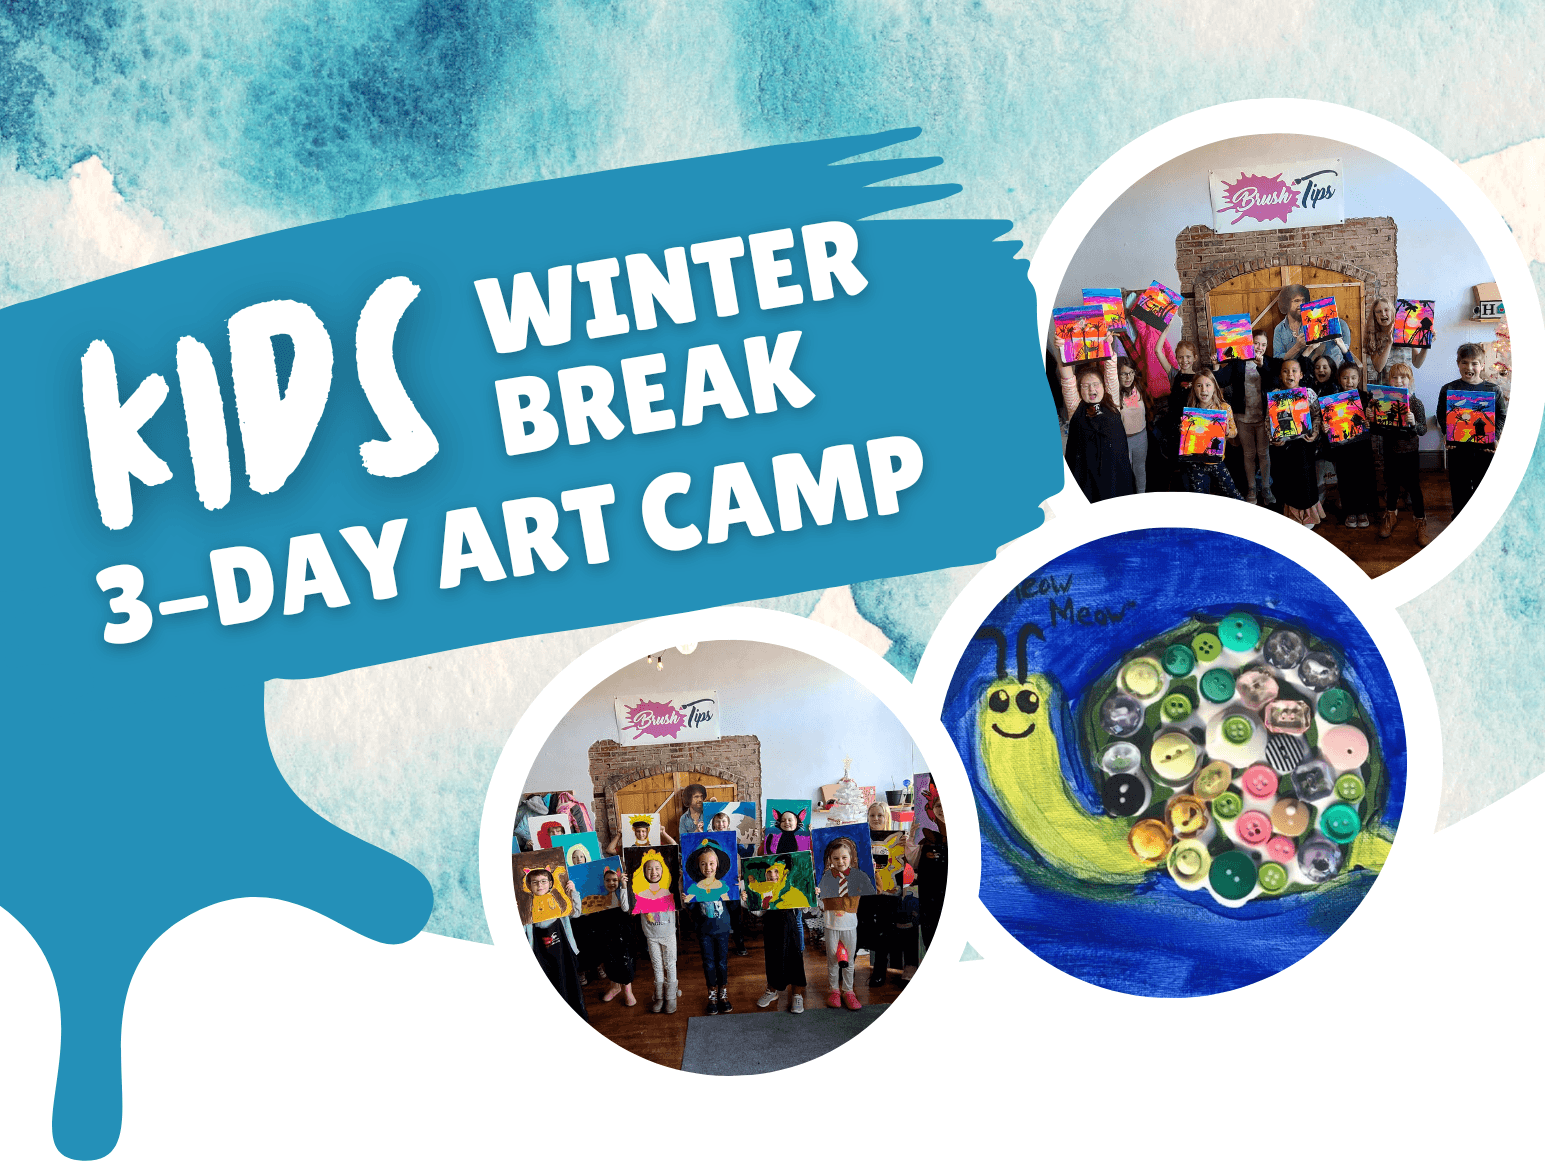 Winter Break Art Camp - 3-Days - Brush Tips Art Studio